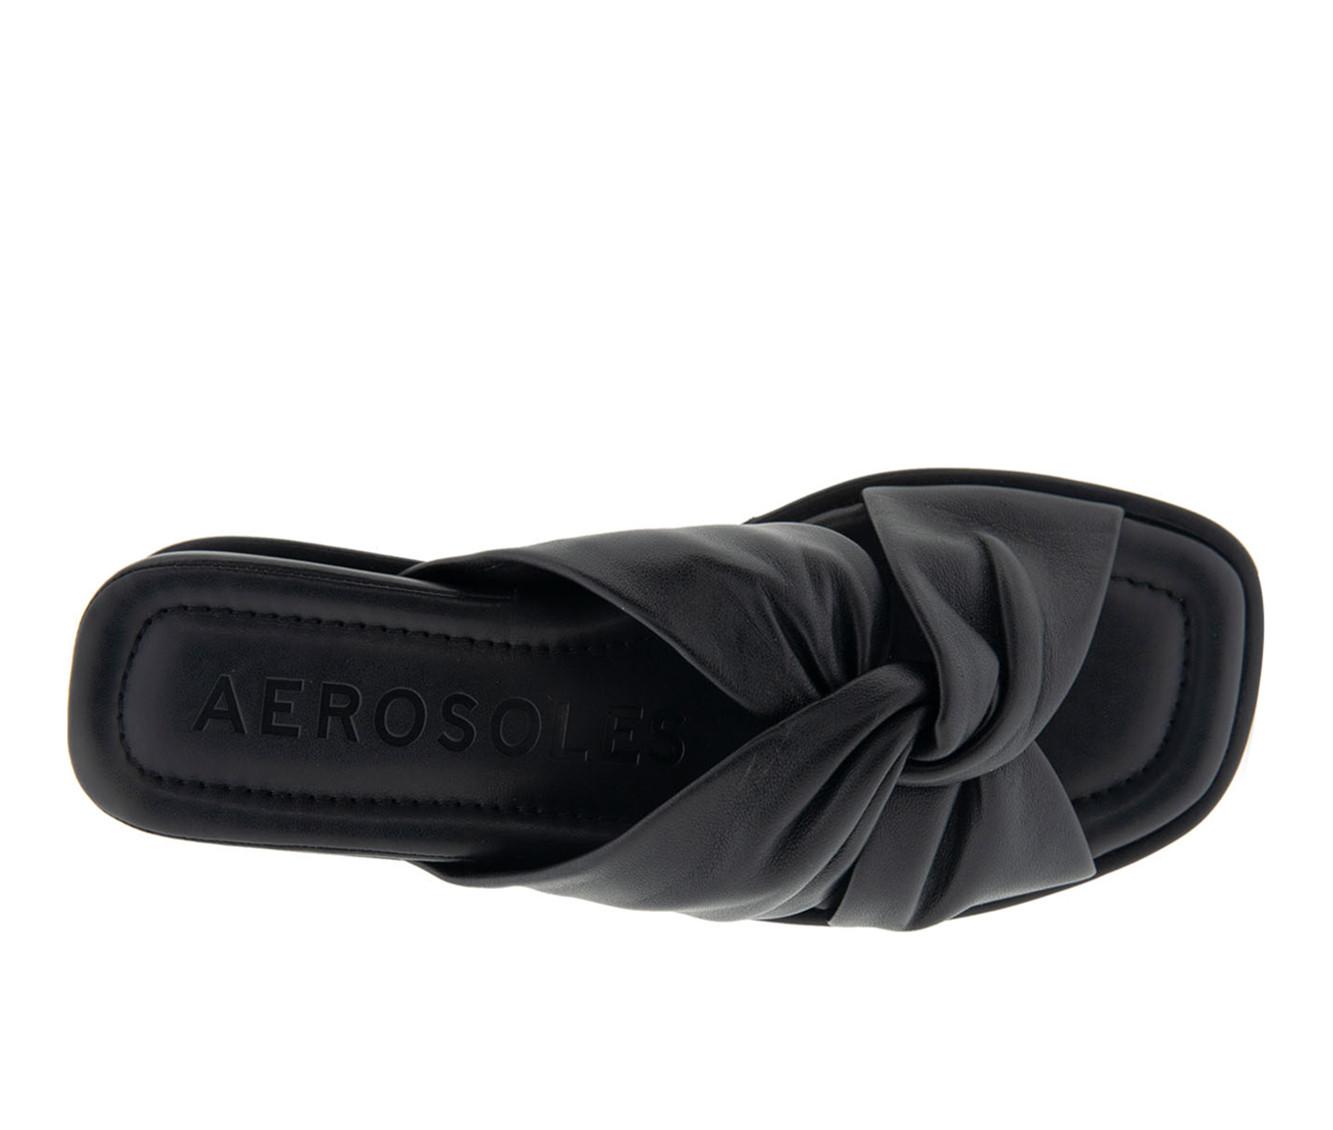 Women's Aerosoles Brady Low Wedge Sandals